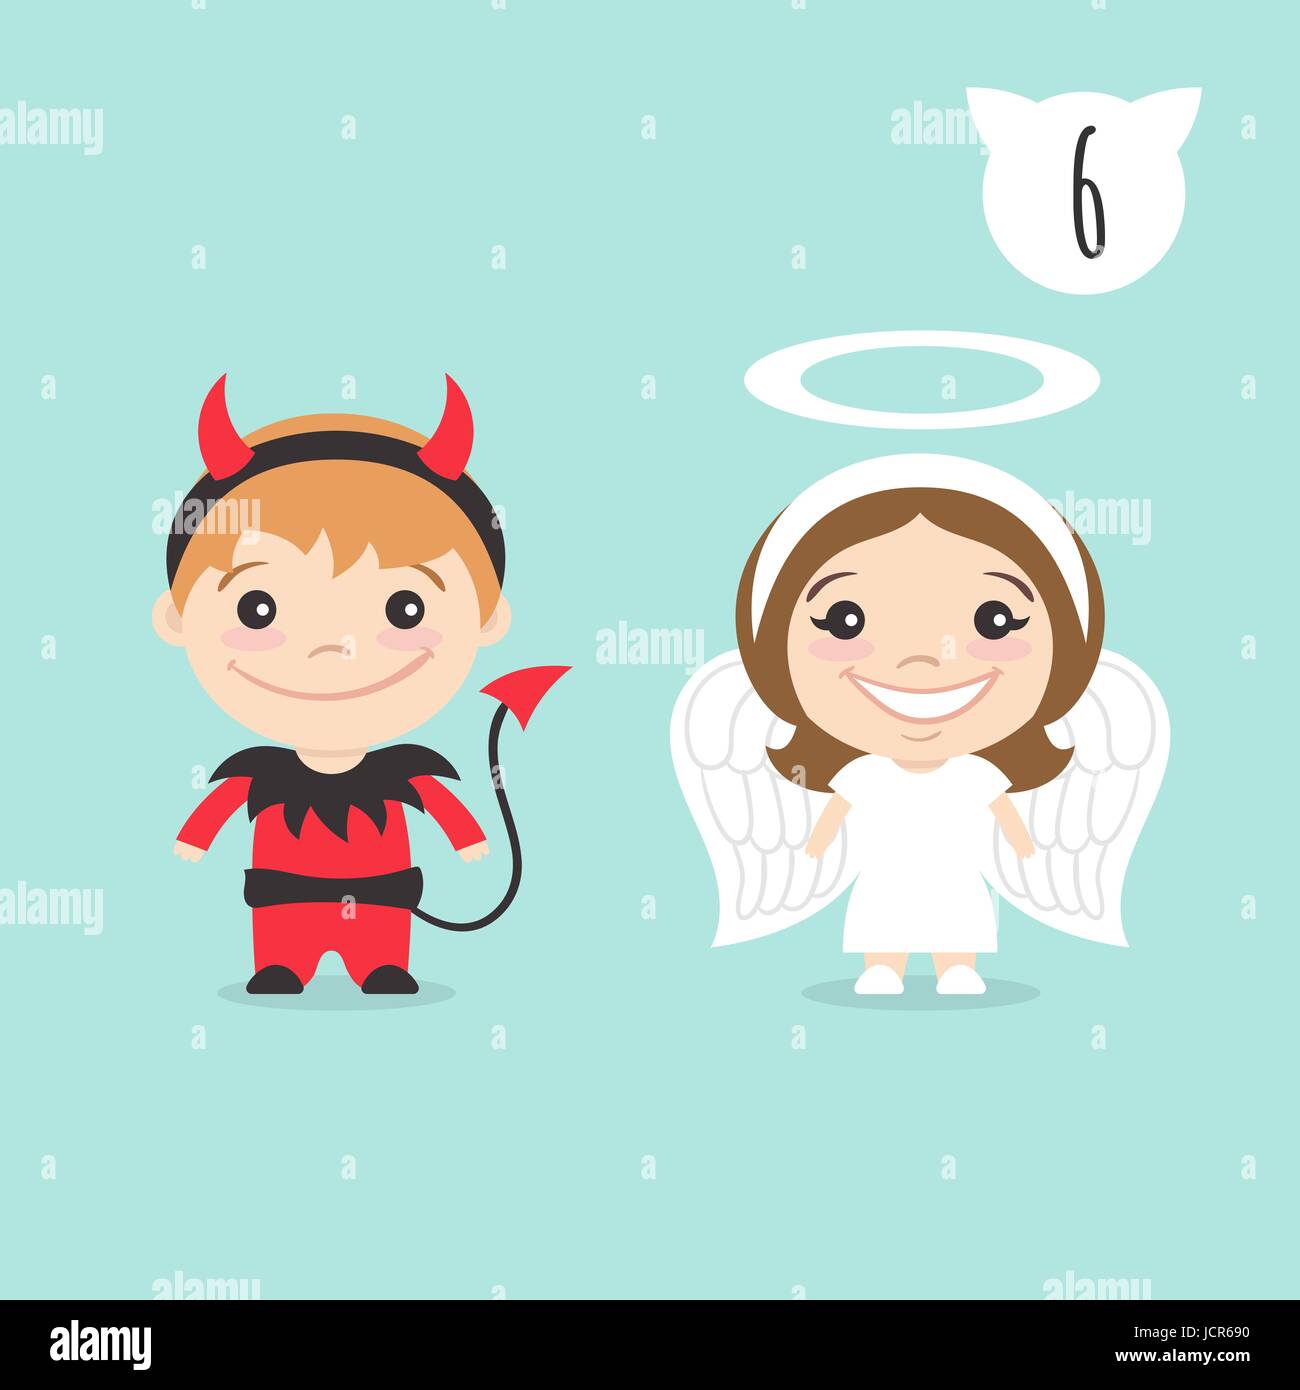 Illustrazione vettoriale delle due felice simpatici personaggi per bambini. Ragazzo in PIM o piccolo diavolo costume e una ragazza in costume di angelo. Illustrazione Vettoriale